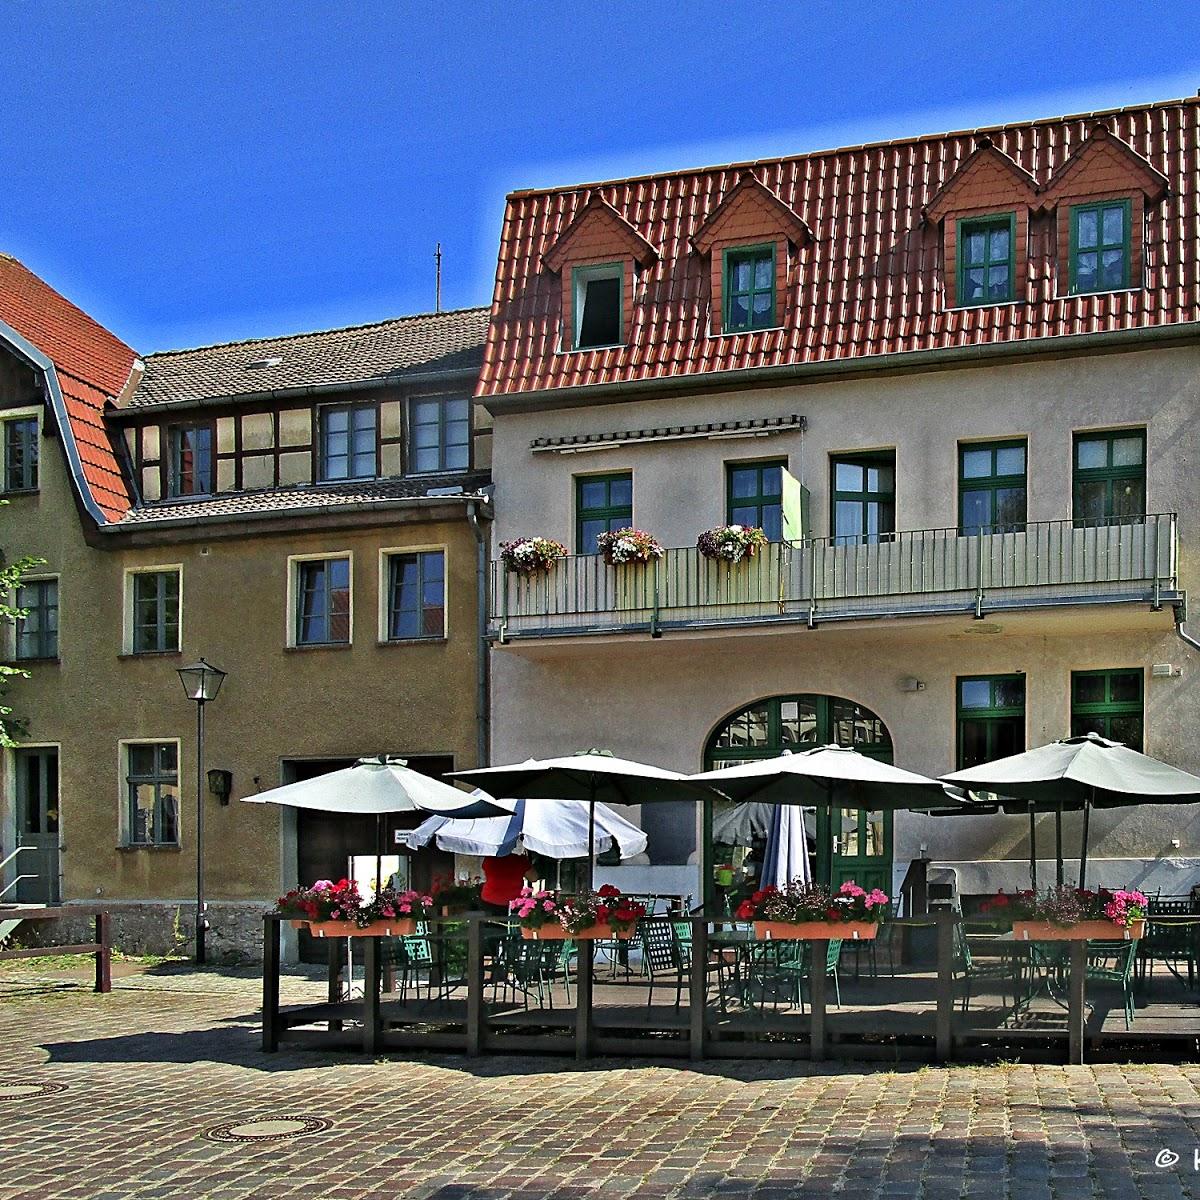 Restaurant "Café am Markt" in Buckow (Märkische Schweiz)